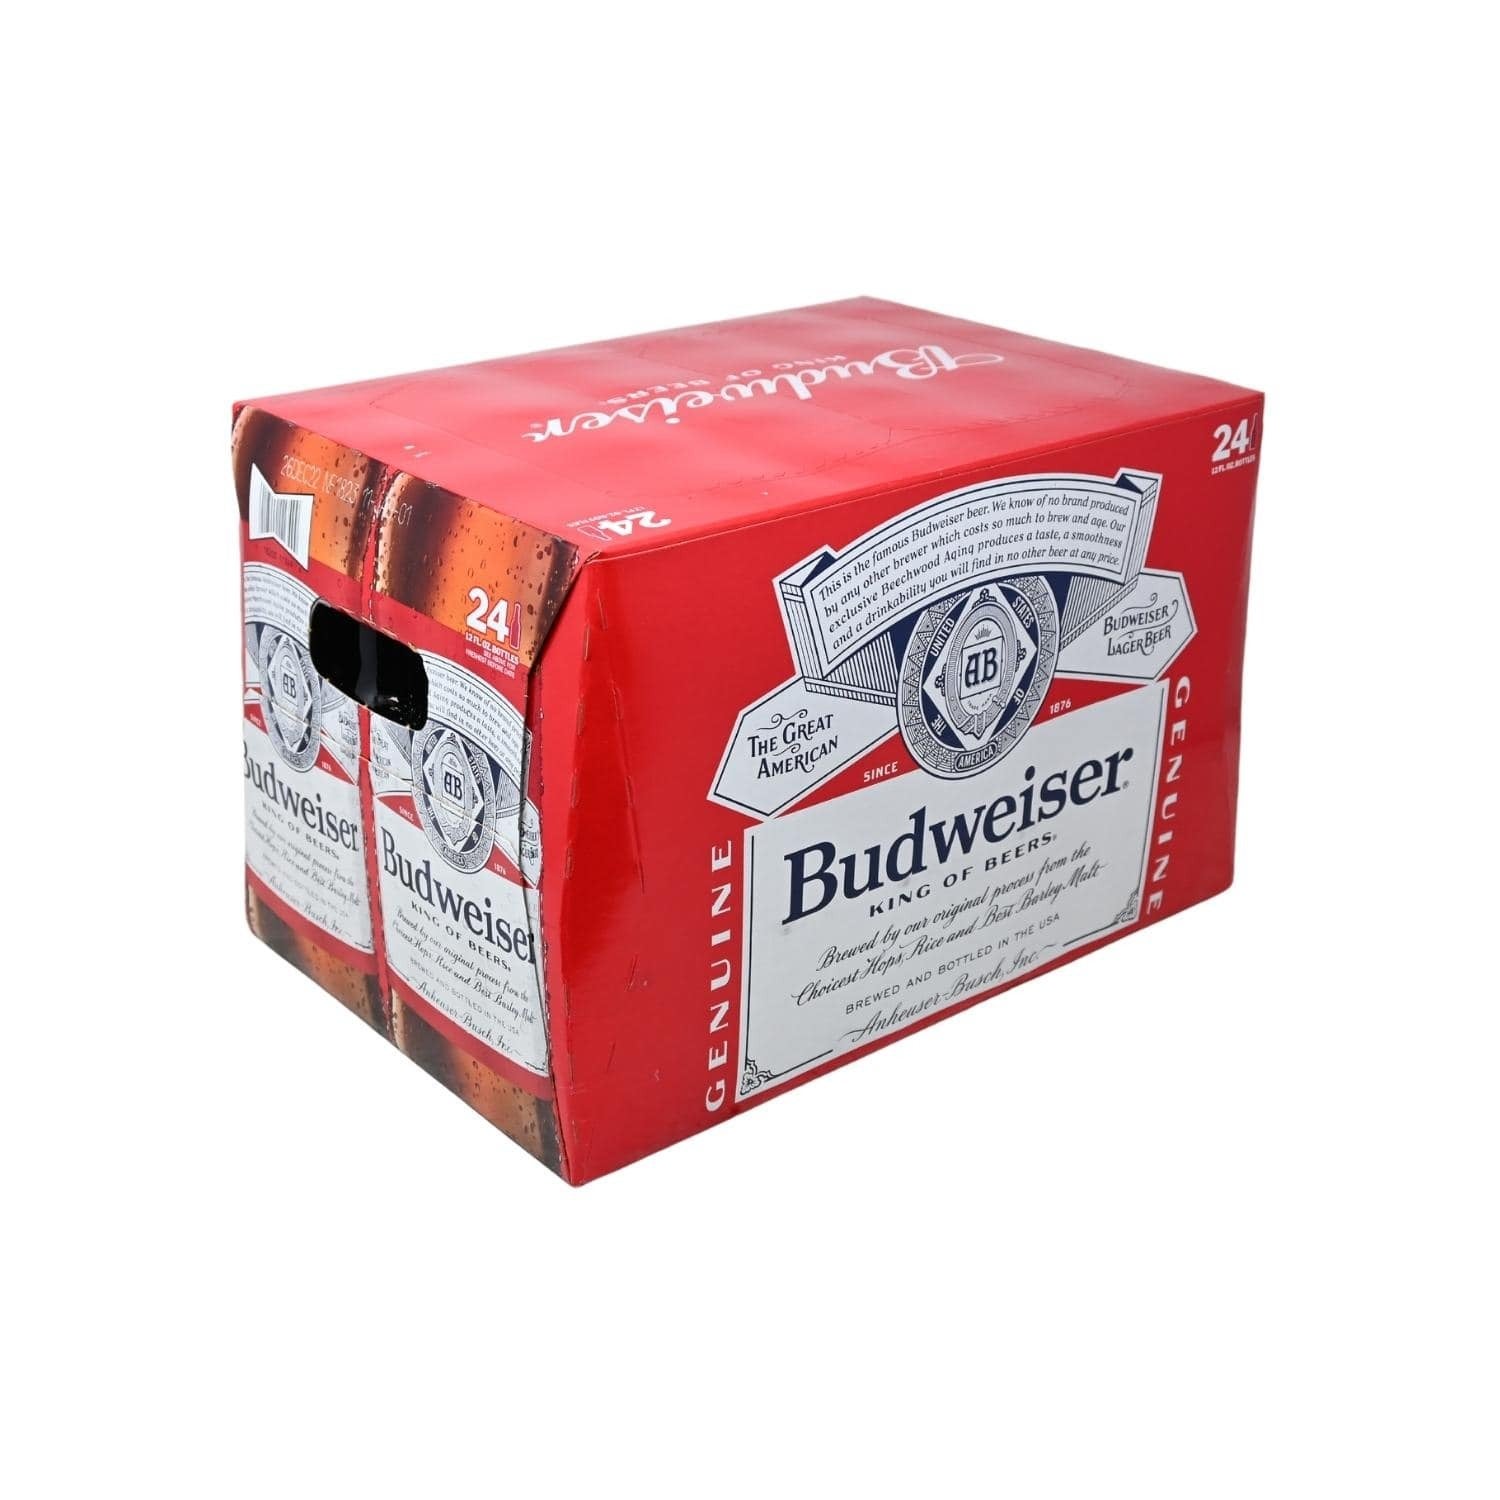 BUDWEISER | Stone's Beer & Beverage Market